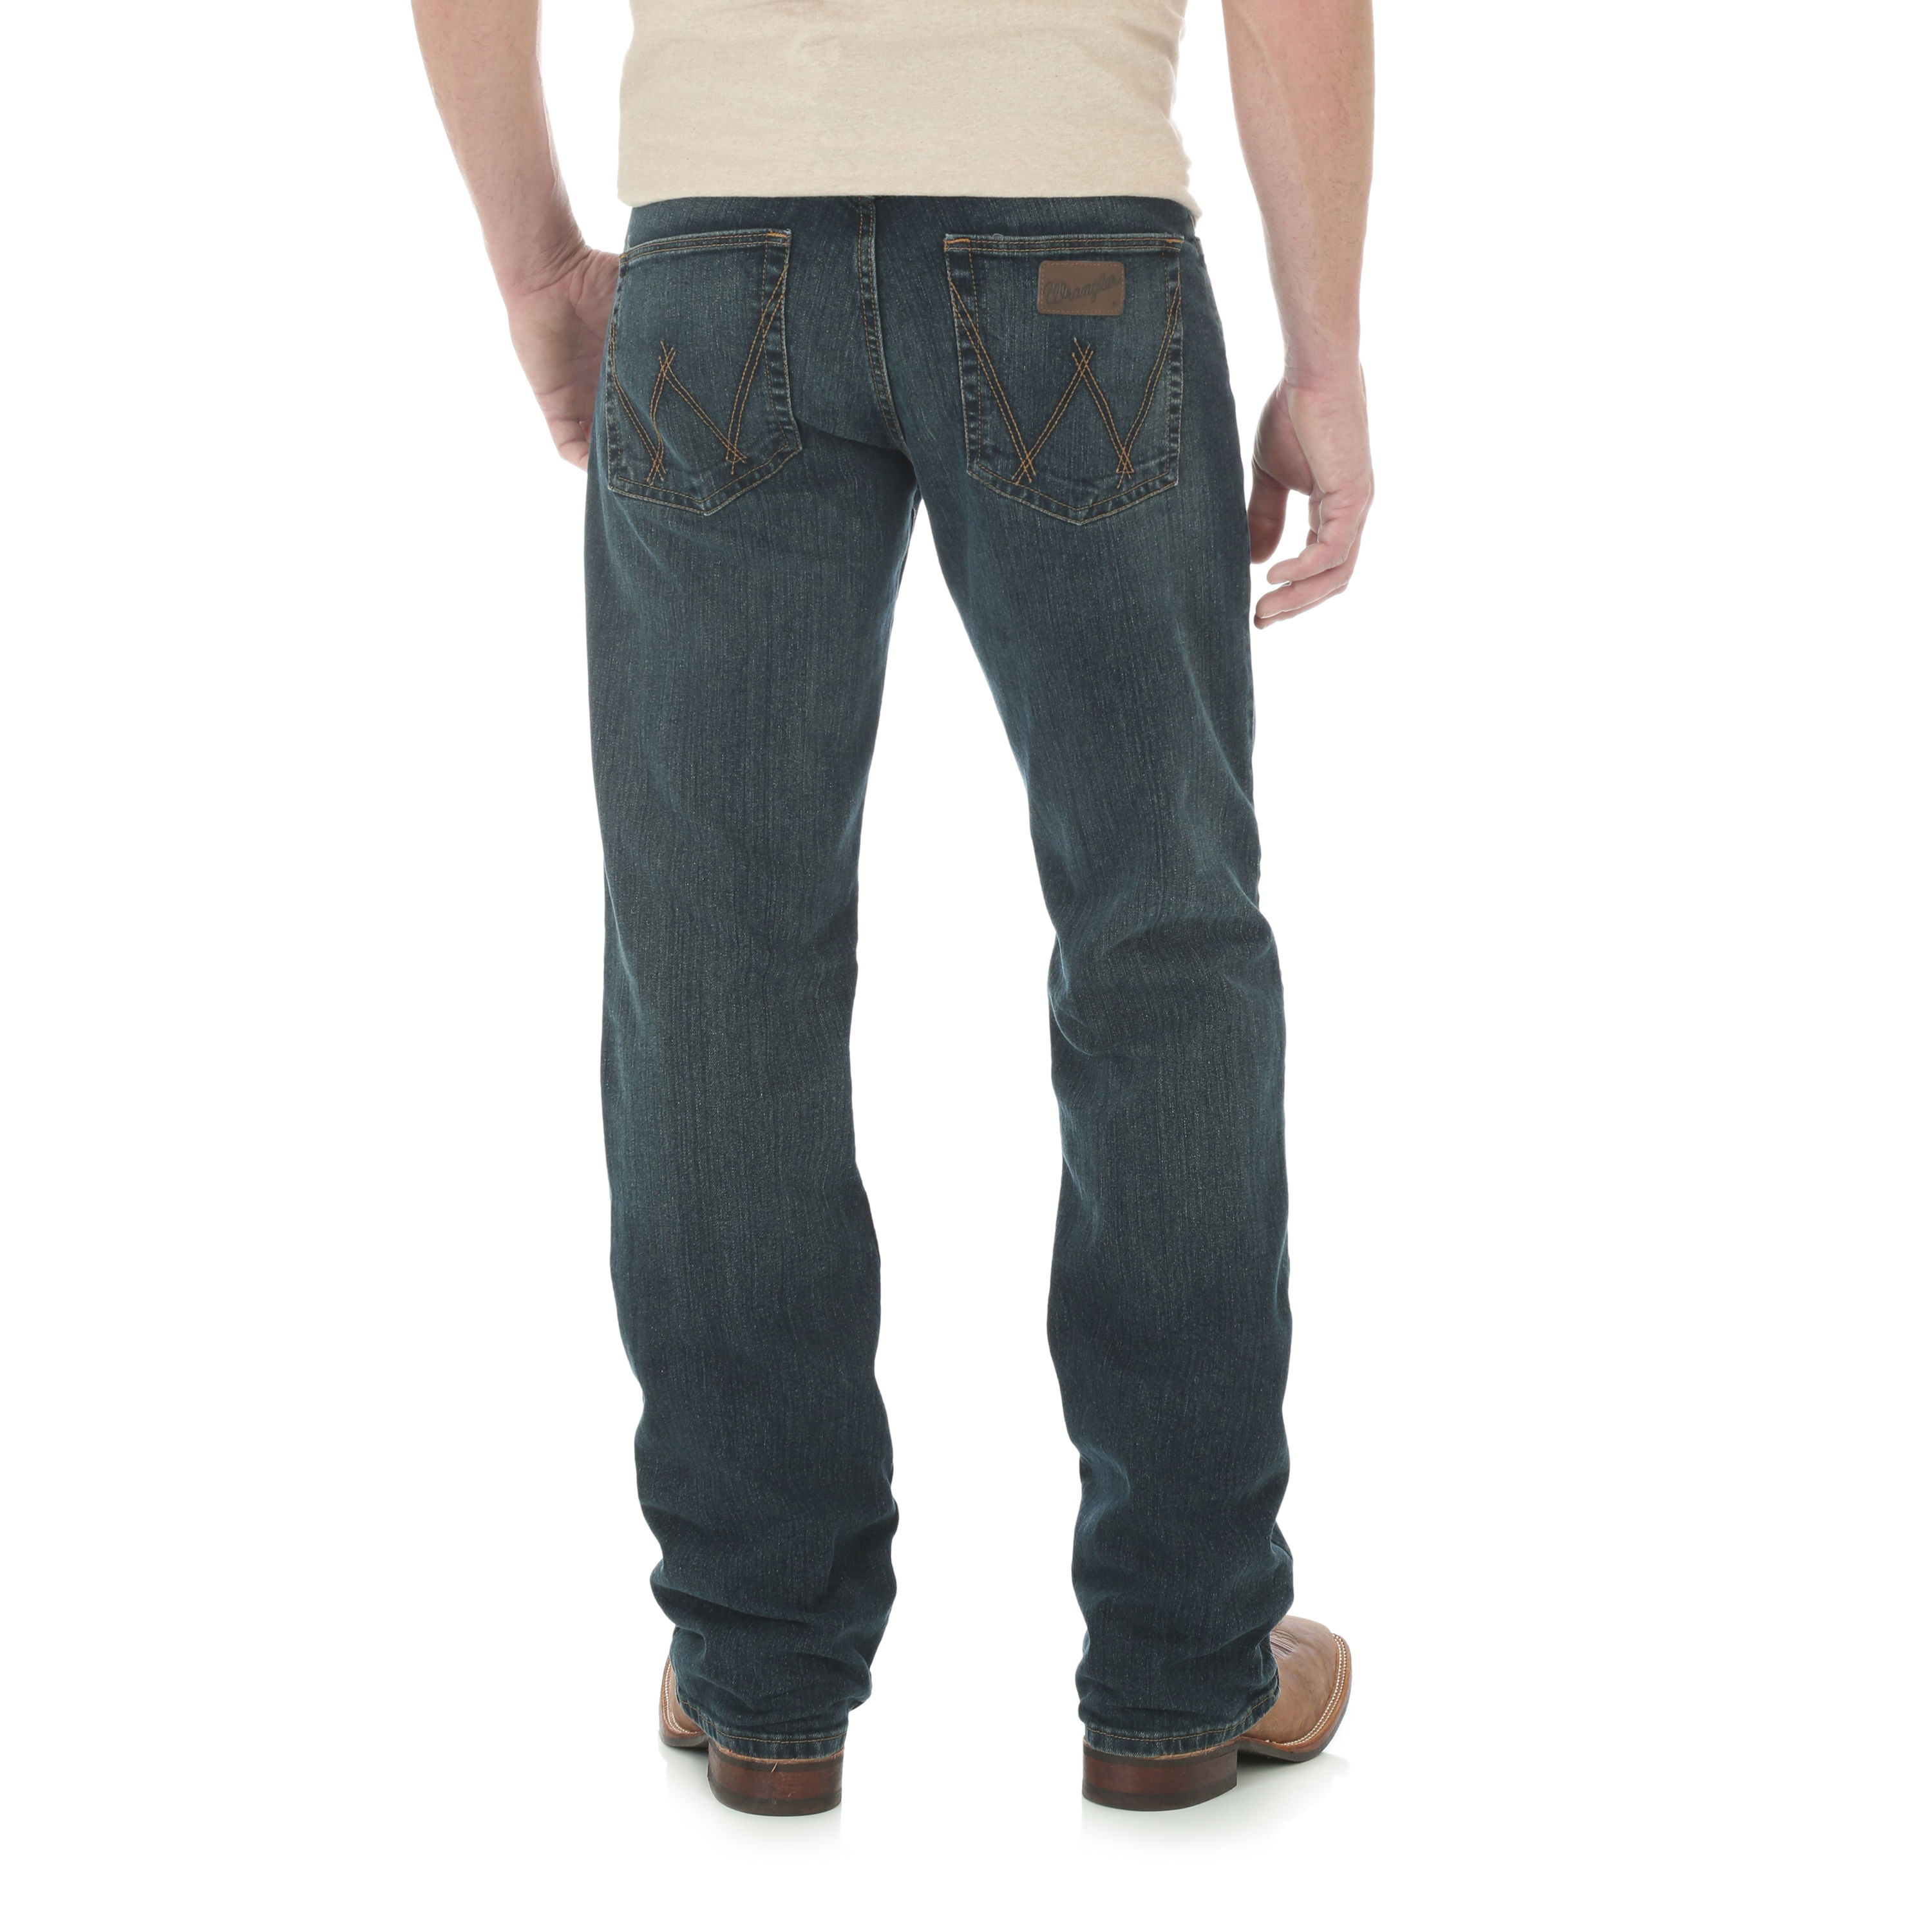 Men's Wrangler 20X Performance Slim Advanced Comfort Root Beer Jeans